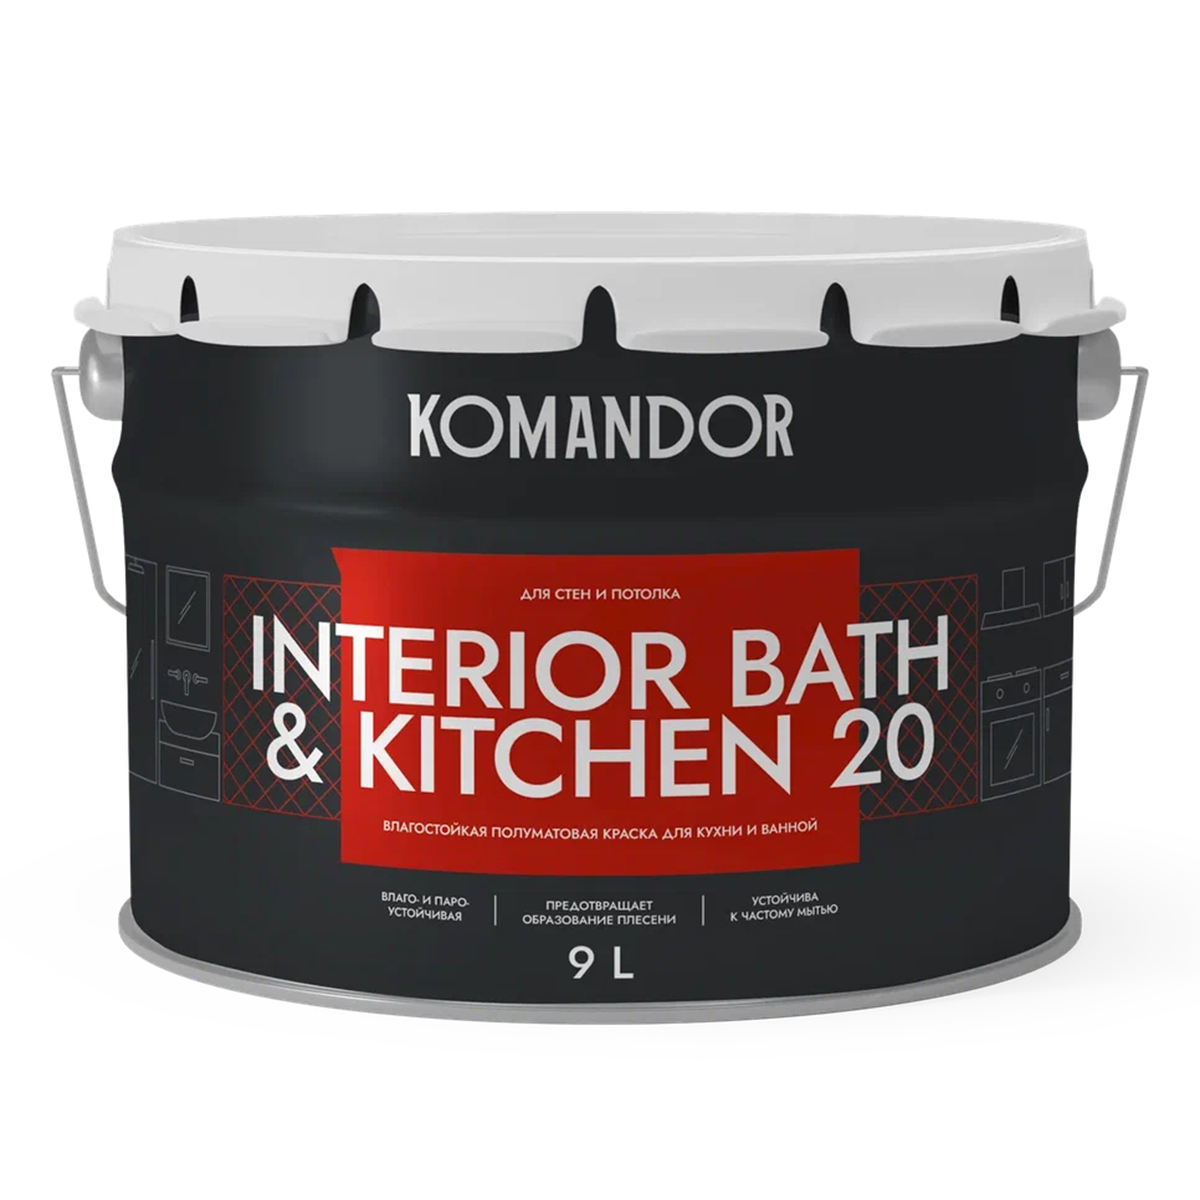 фото Краска интерьерная влагостойкая komandor interior bath&kitchen 20, база с, бесцветная, 9 л